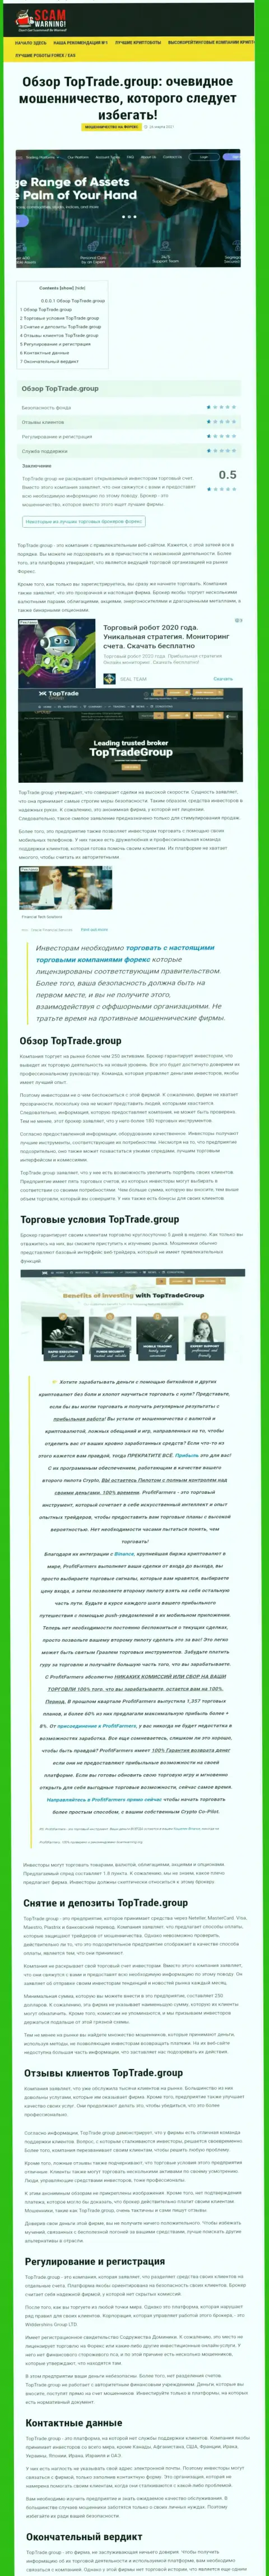 Статья с обзором противоправных деяний Top Trade Group, нацеленных на грабеж клиентов